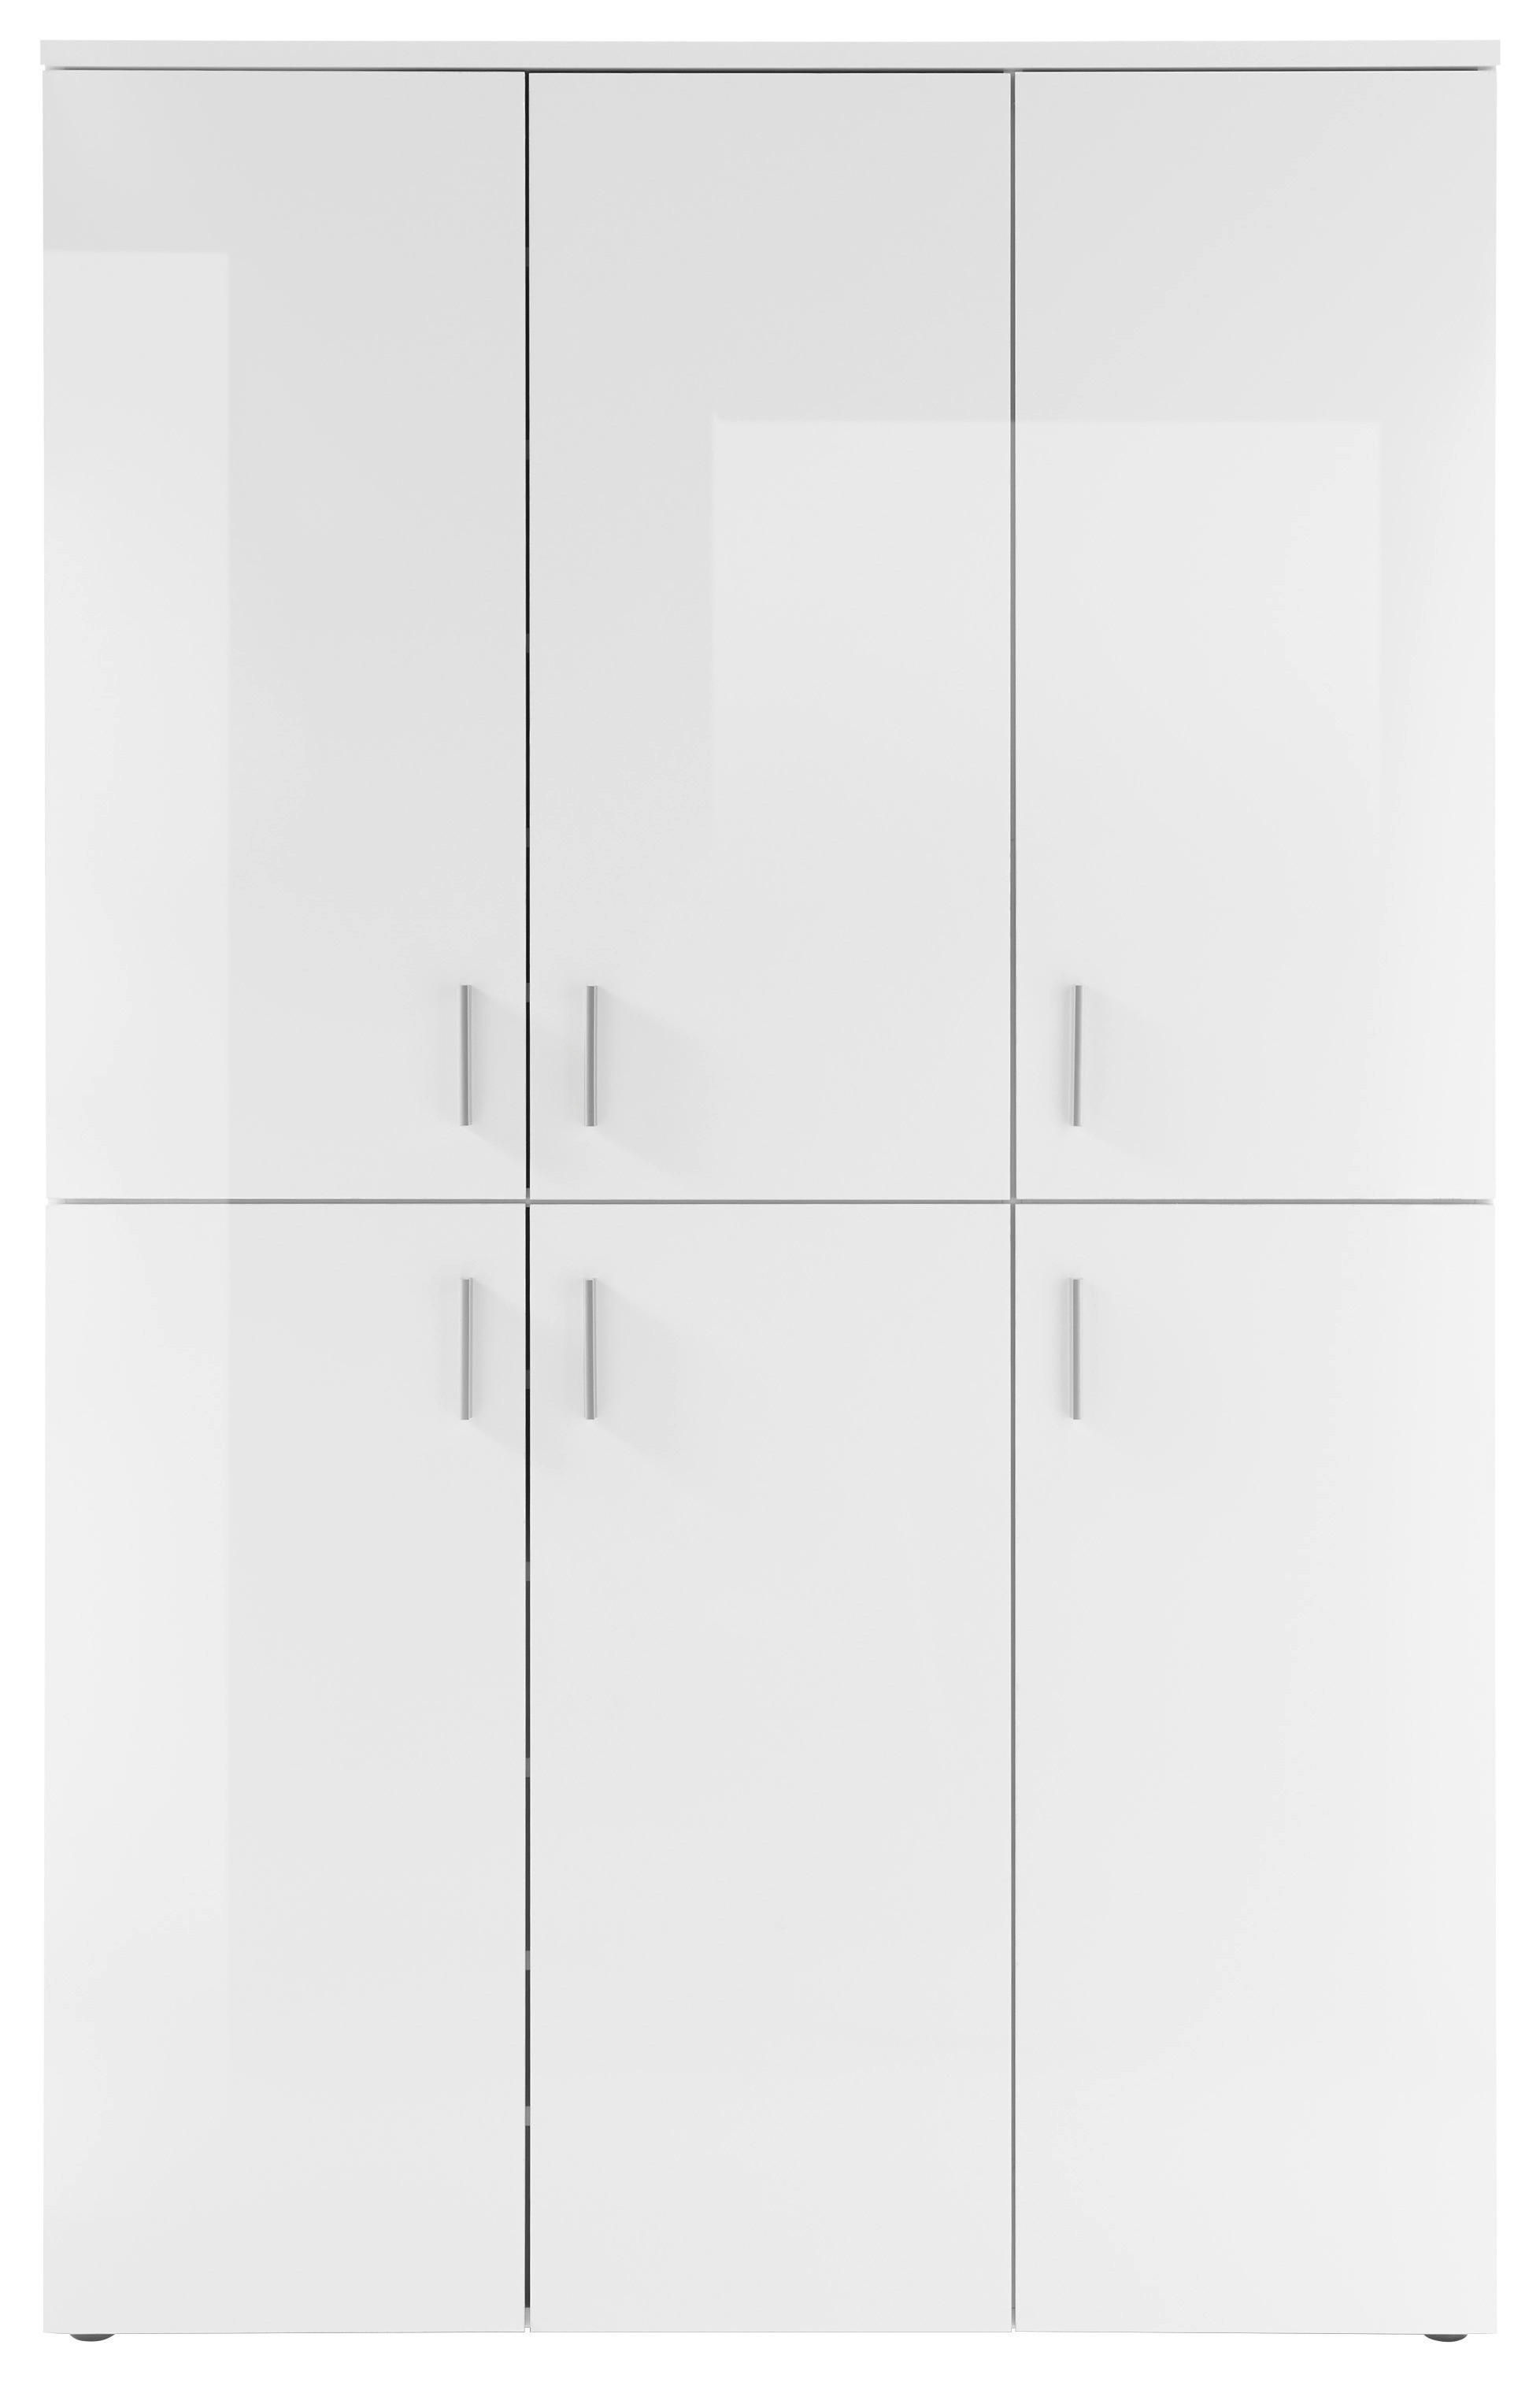 SCHUHSCHRANK 120/190/35 cm  - Silberfarben/Weiß, Design, Holzwerkstoff/Kunststoff (120/190/35cm) - MID.YOU